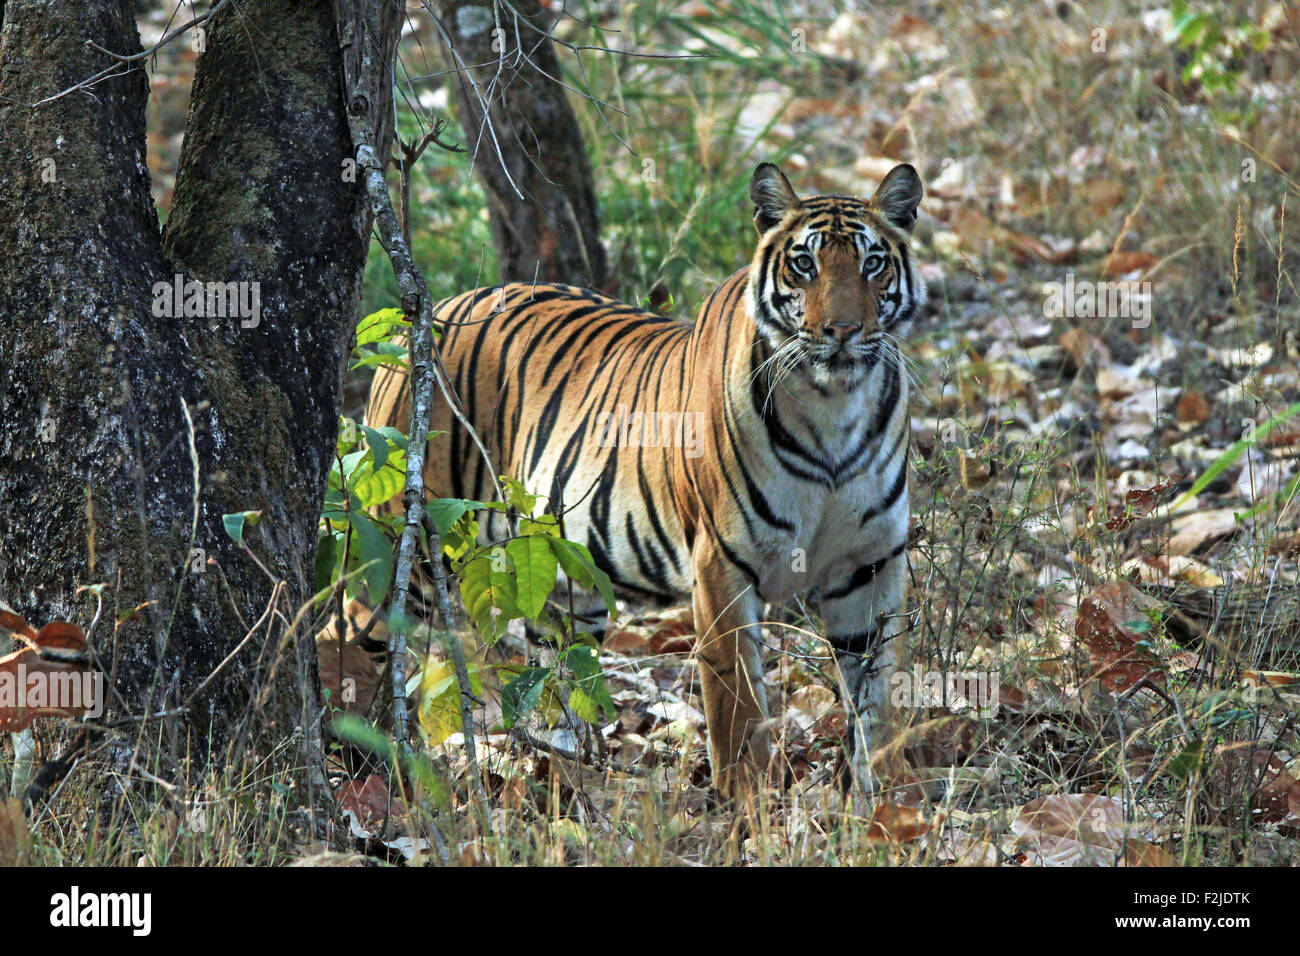 Tigre du Bengale (Panthera tigris tigris) en regardant dans la caméra. Bandhavgarh, Inde Banque D'Images